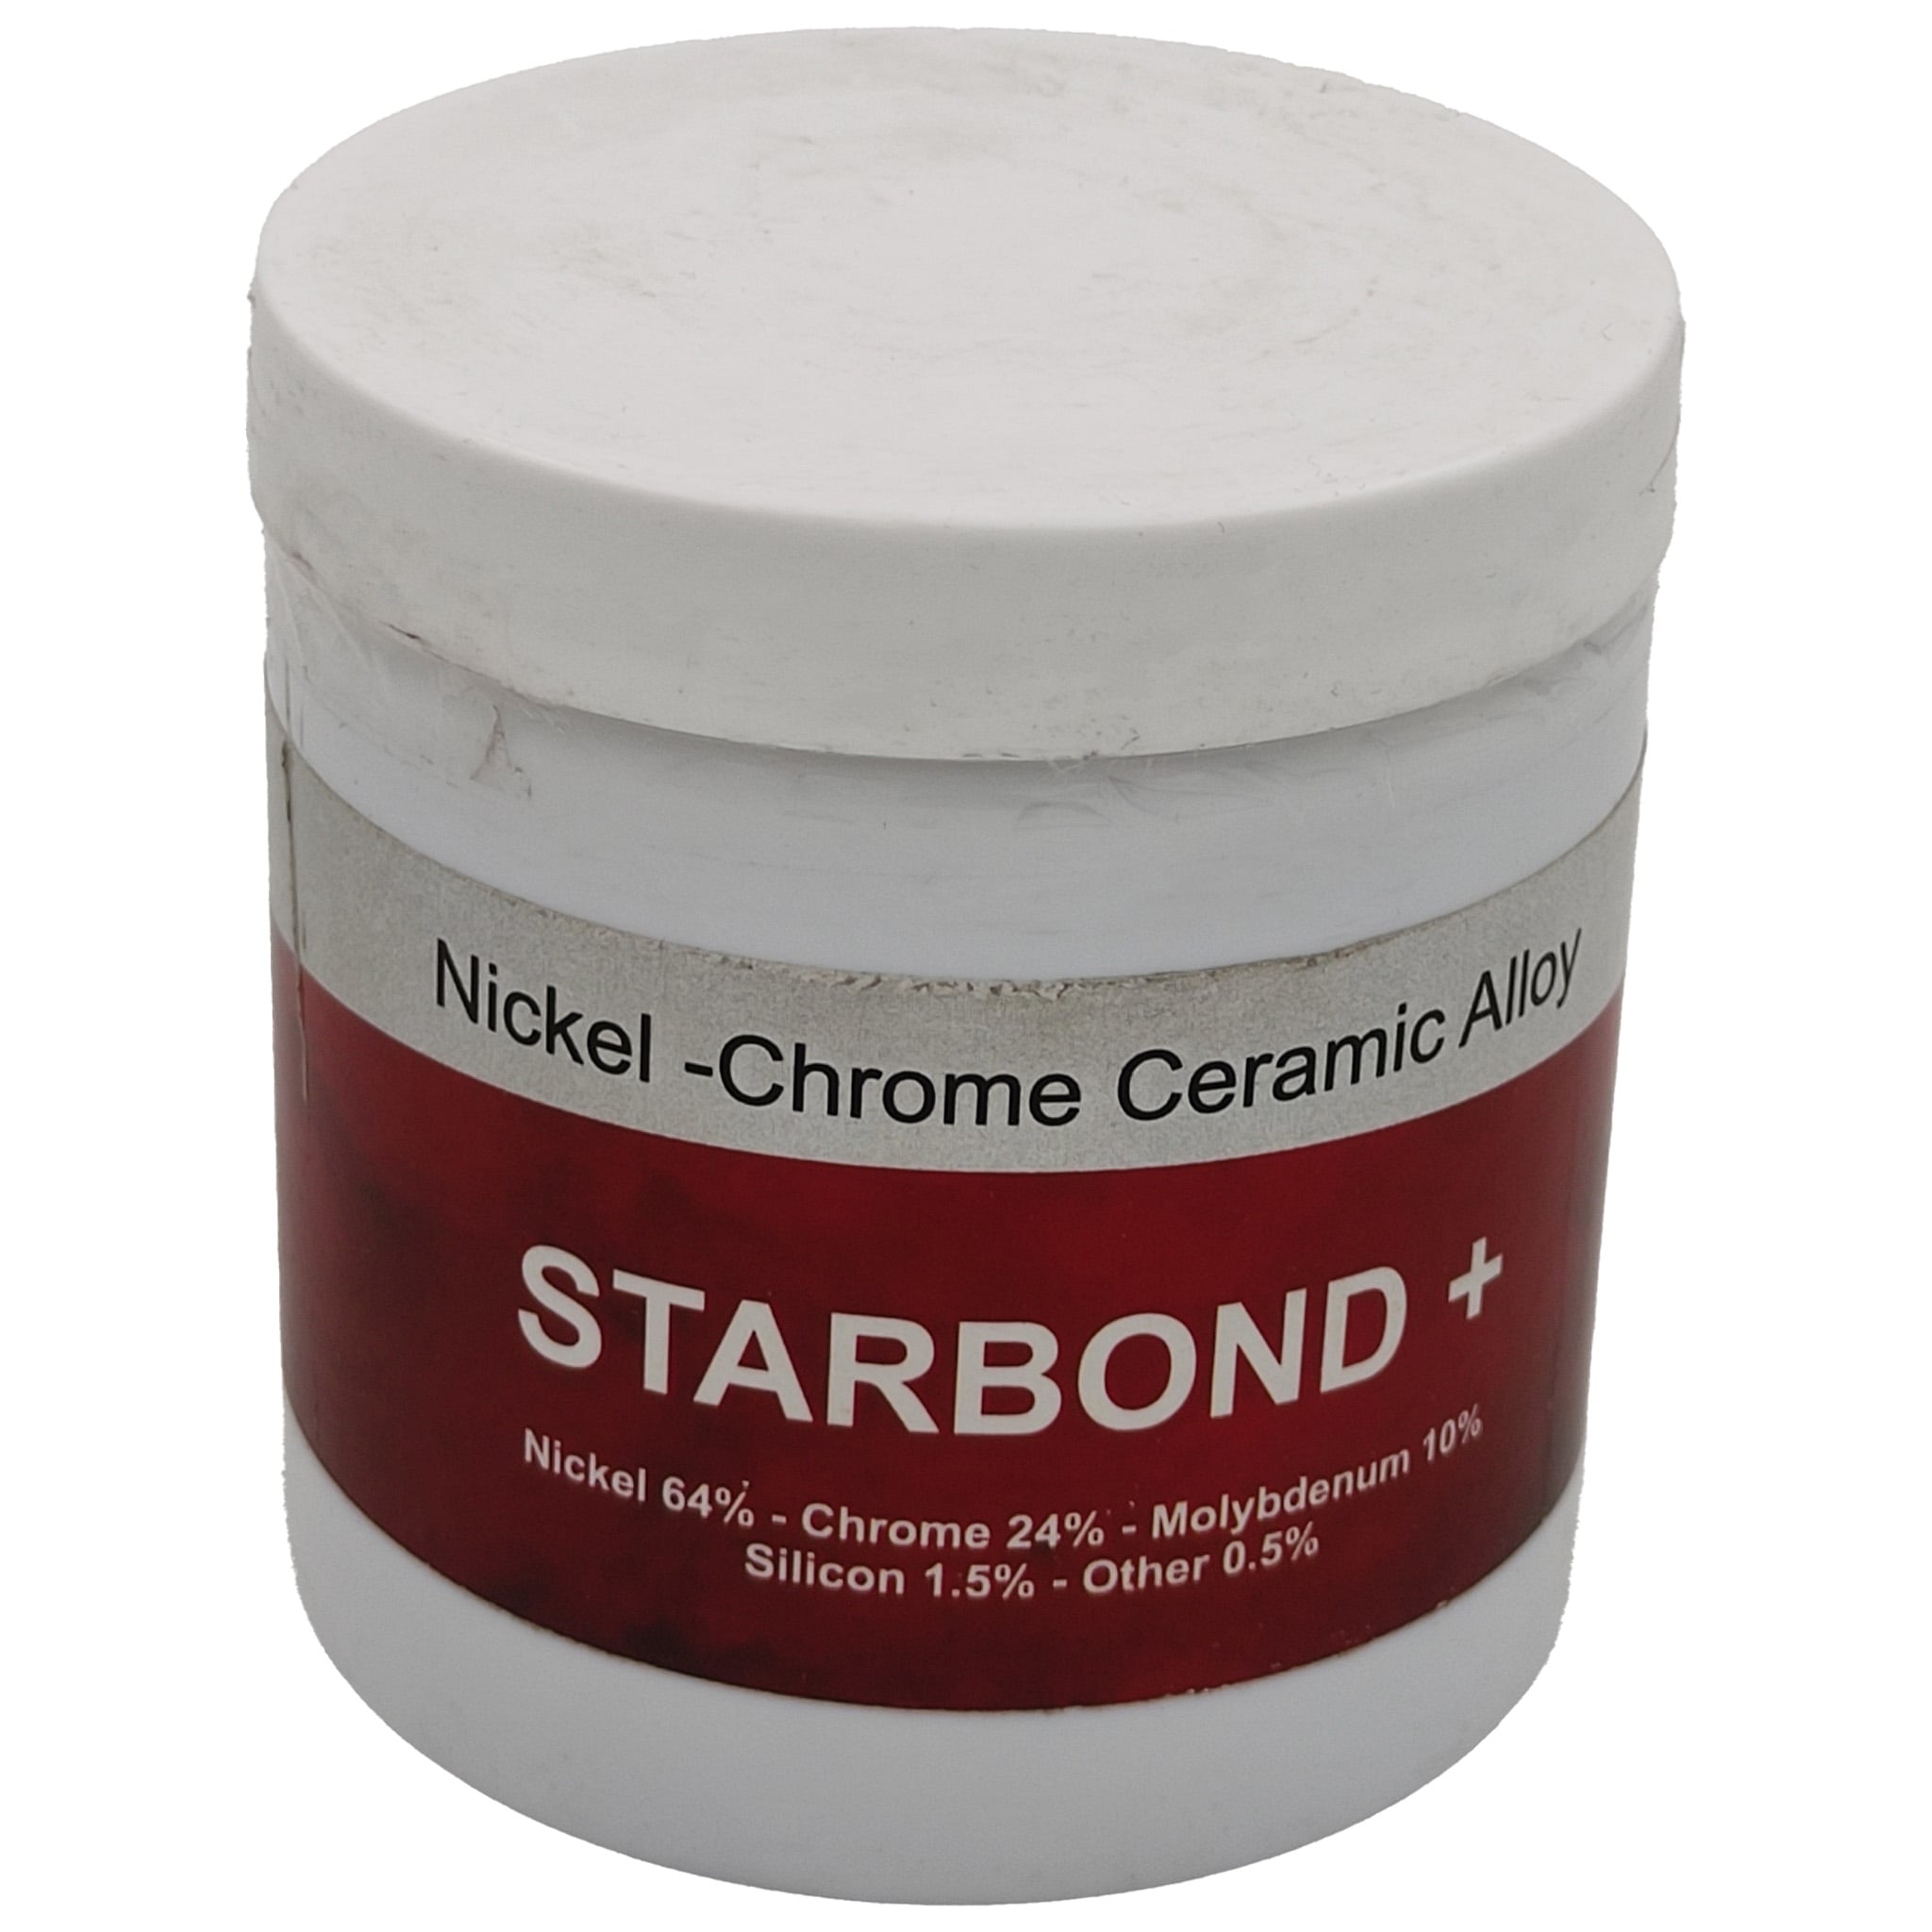 Starbond+ Ceramic Alloy Metal